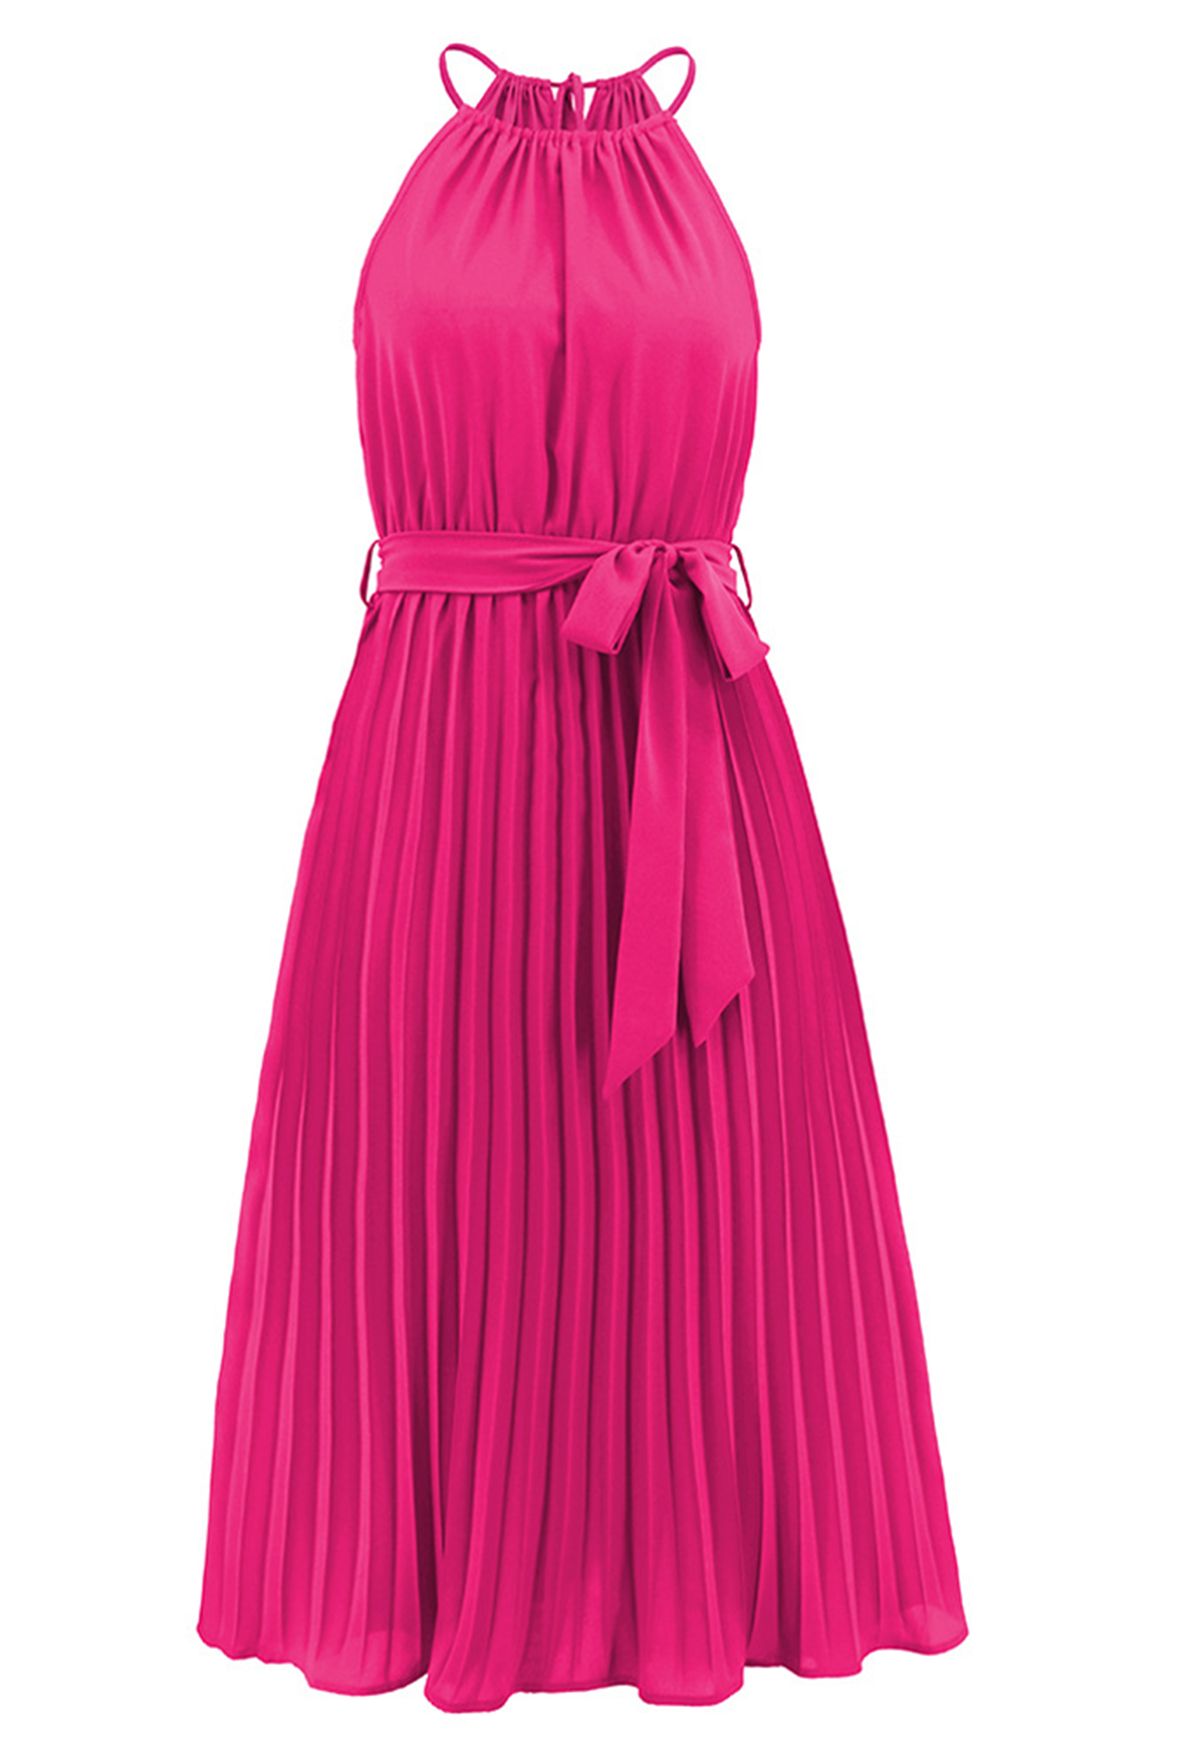 Halter Neck Tie Waist Pleated Dress in Hot Pink